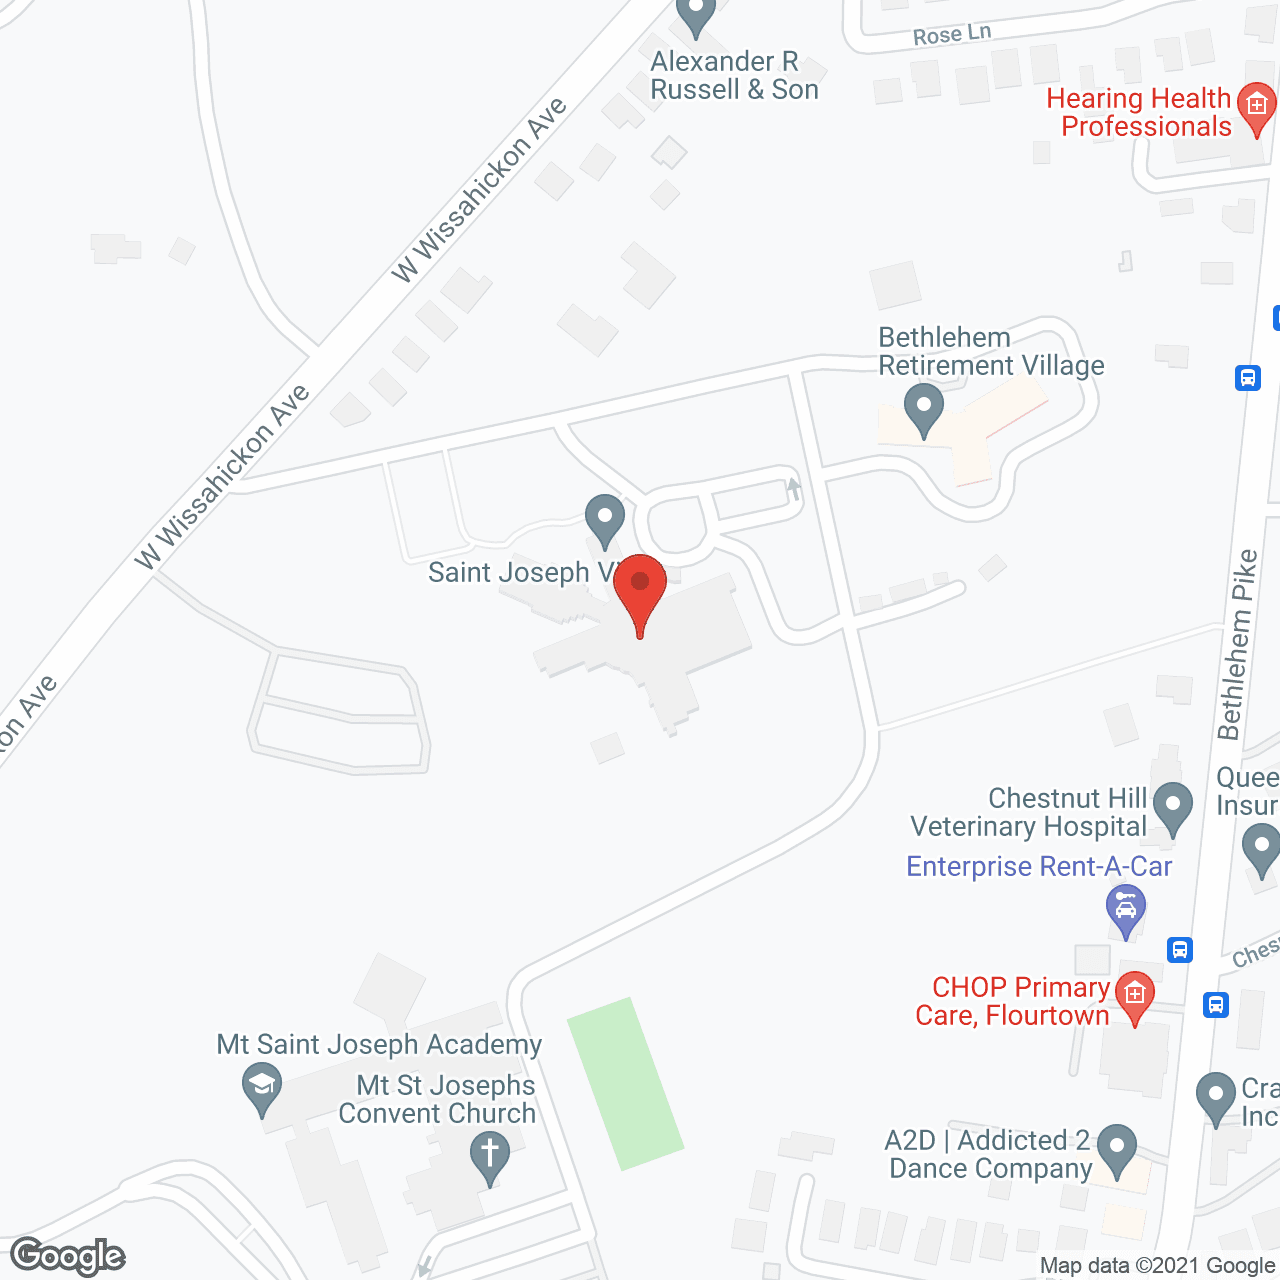 St Joseph's Villa-Flourtown in google map